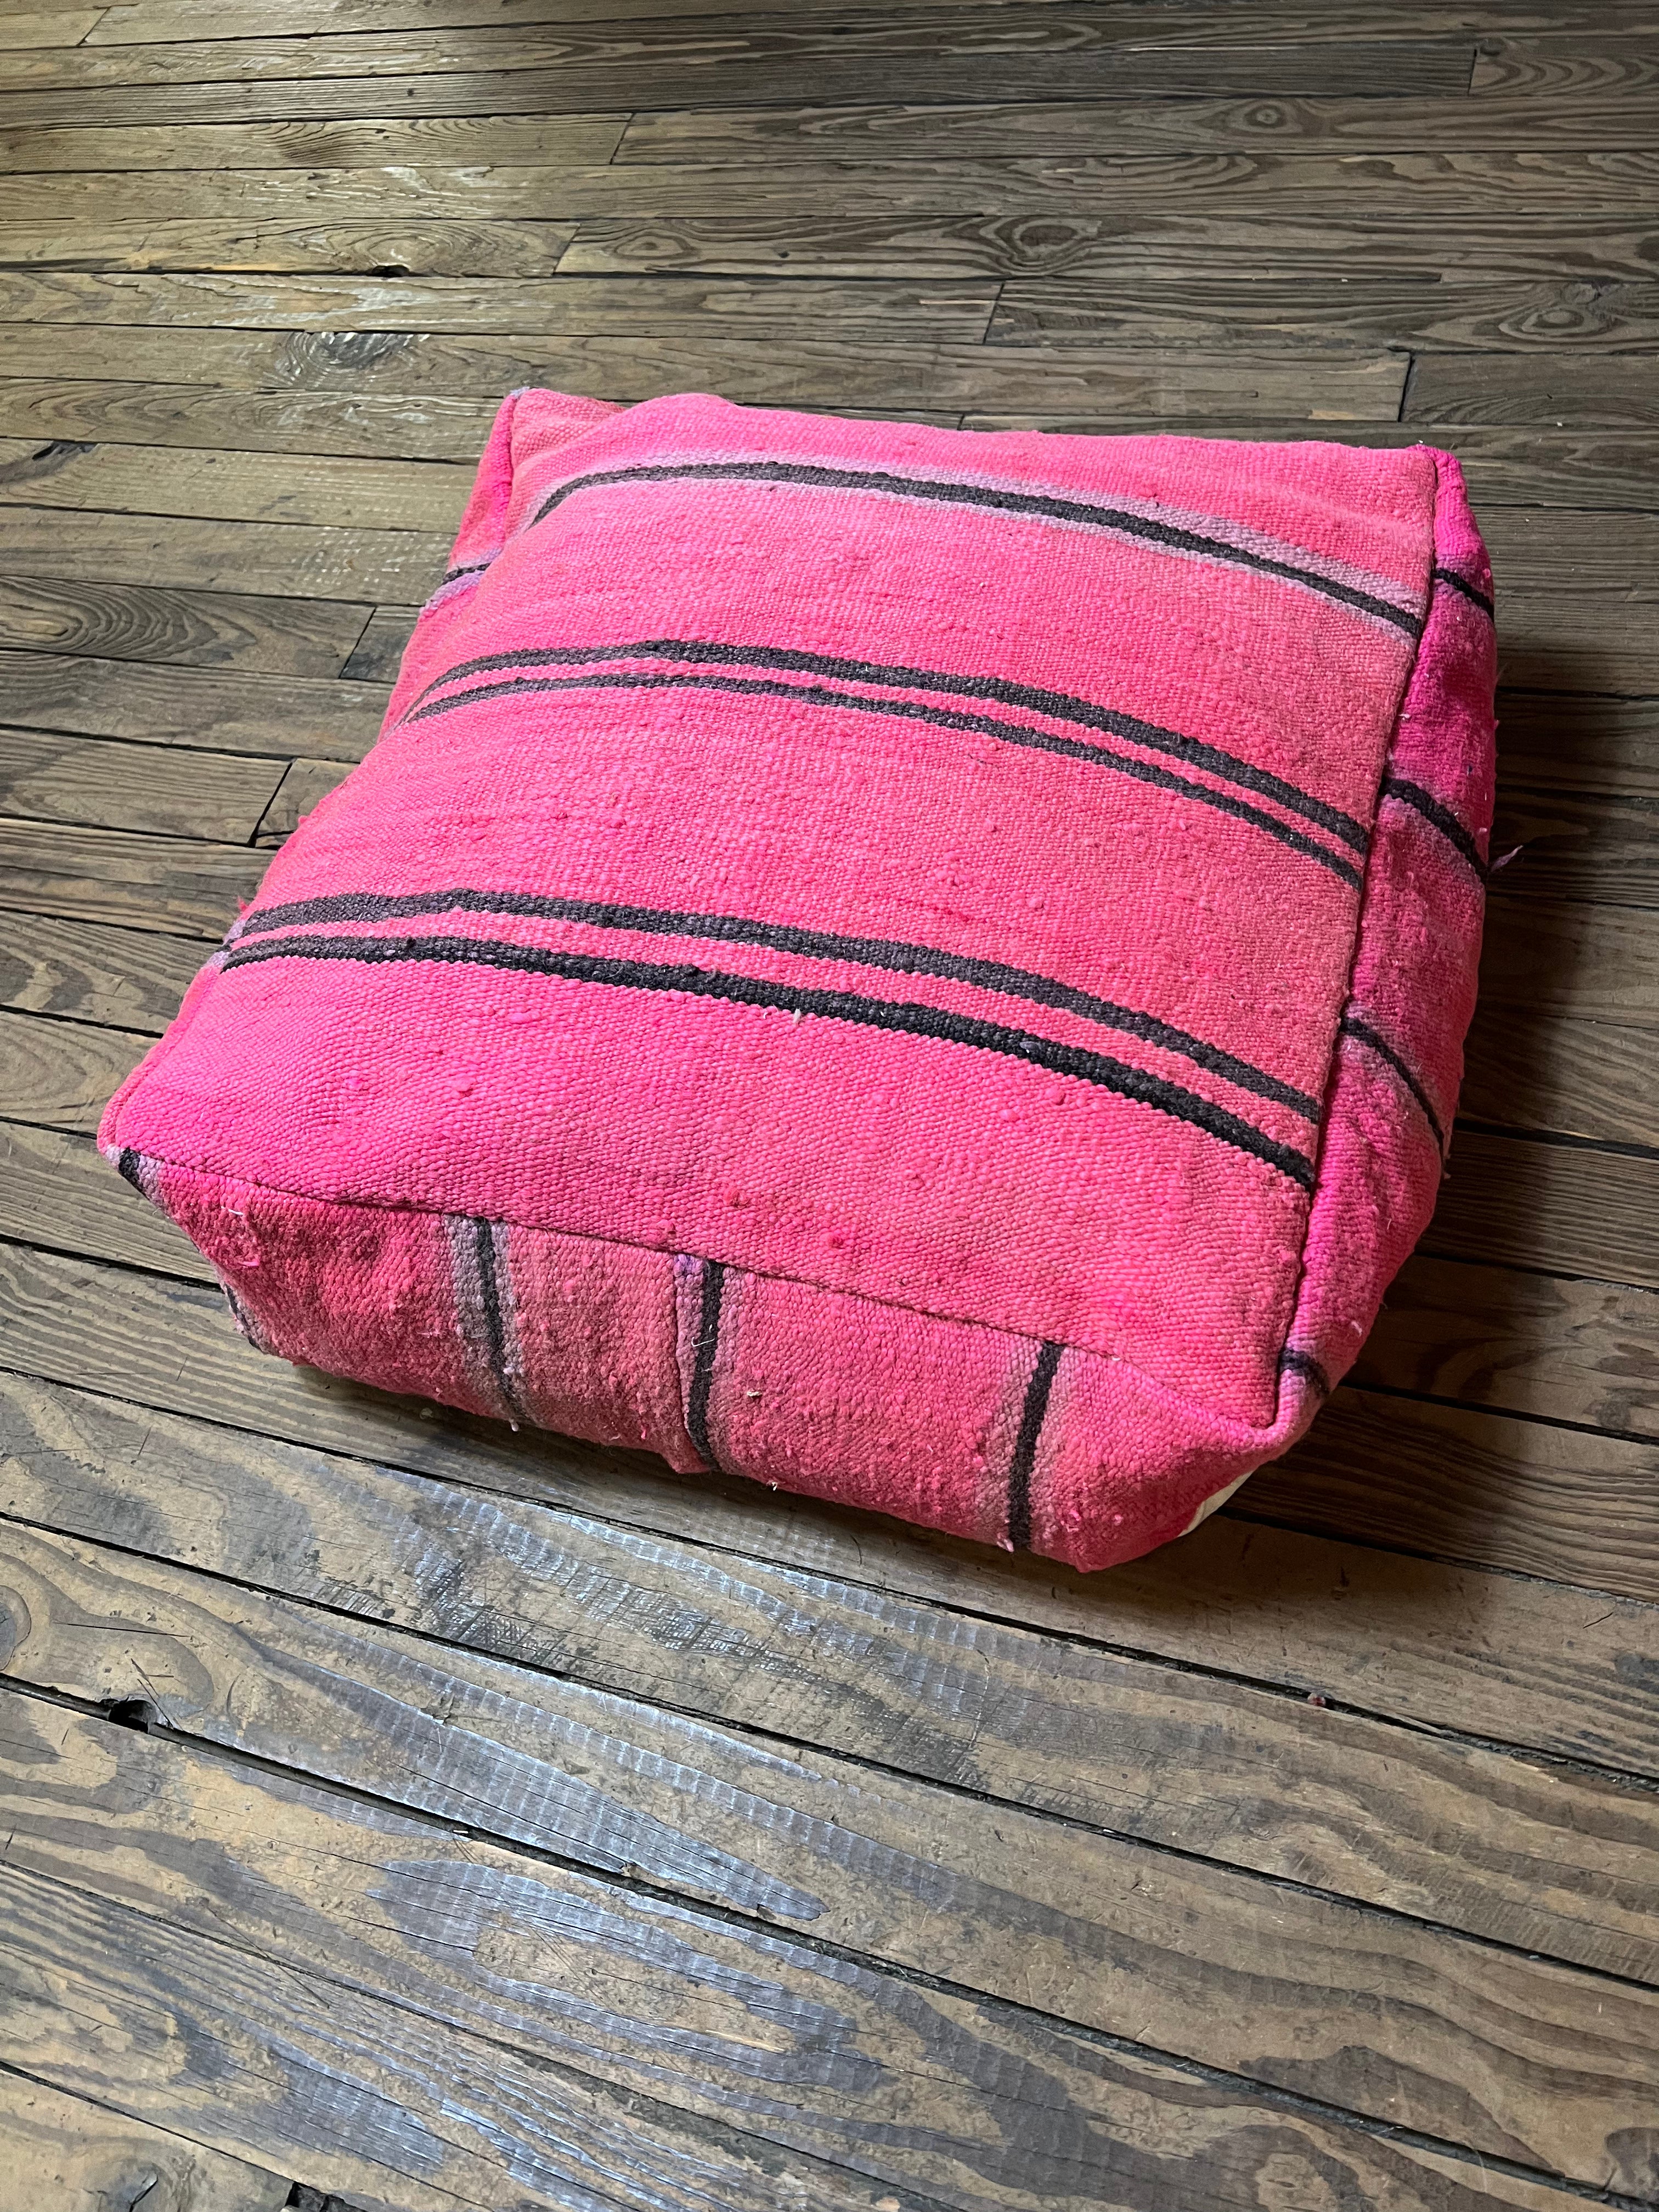 Moroccan Floor Cushion Pink 2